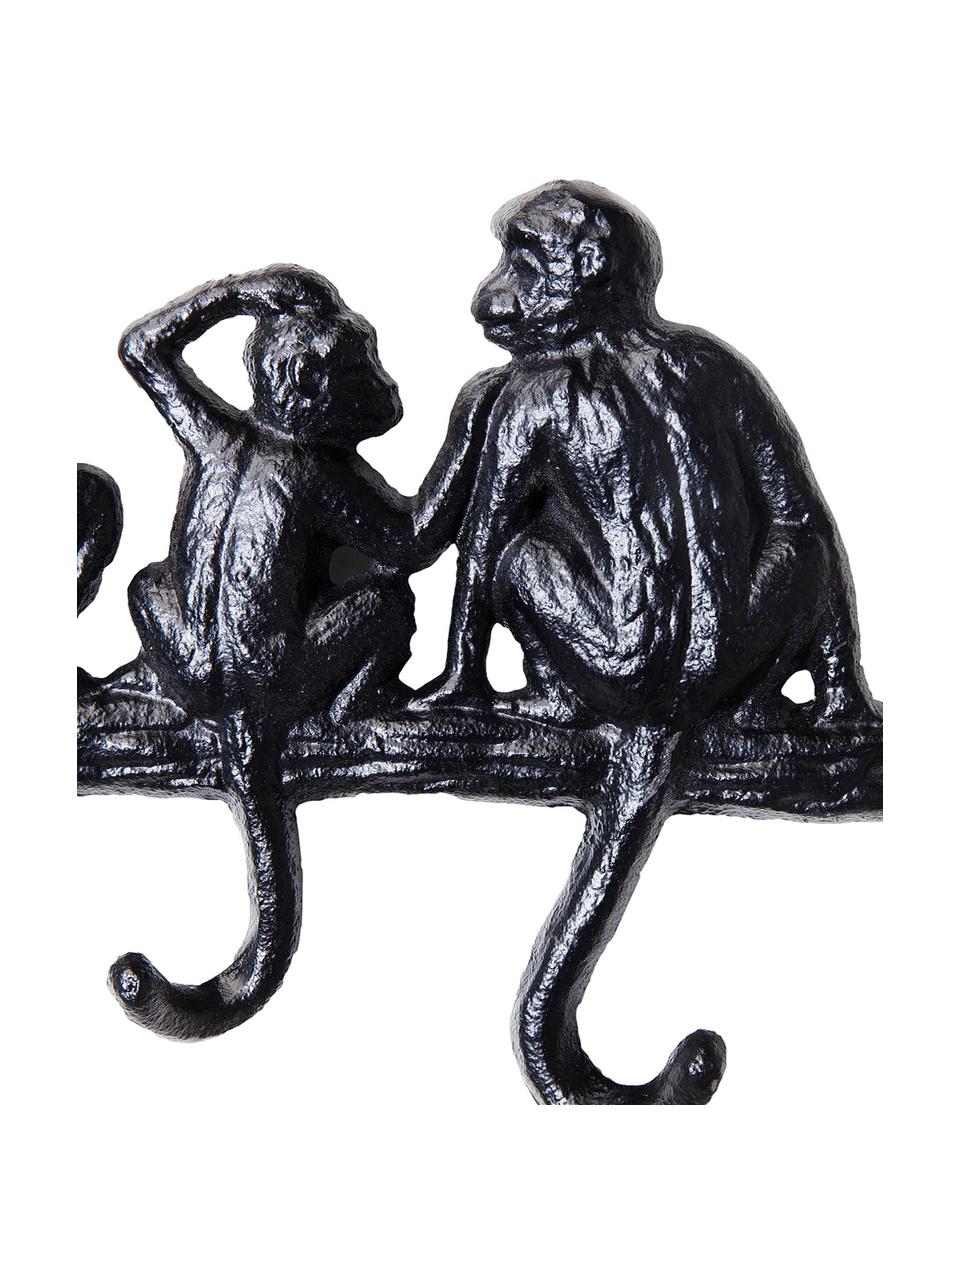 Mały wieszak ścienny Monkey, Metal malowany proszkowo, Czarny, S 31 x W 14 cm